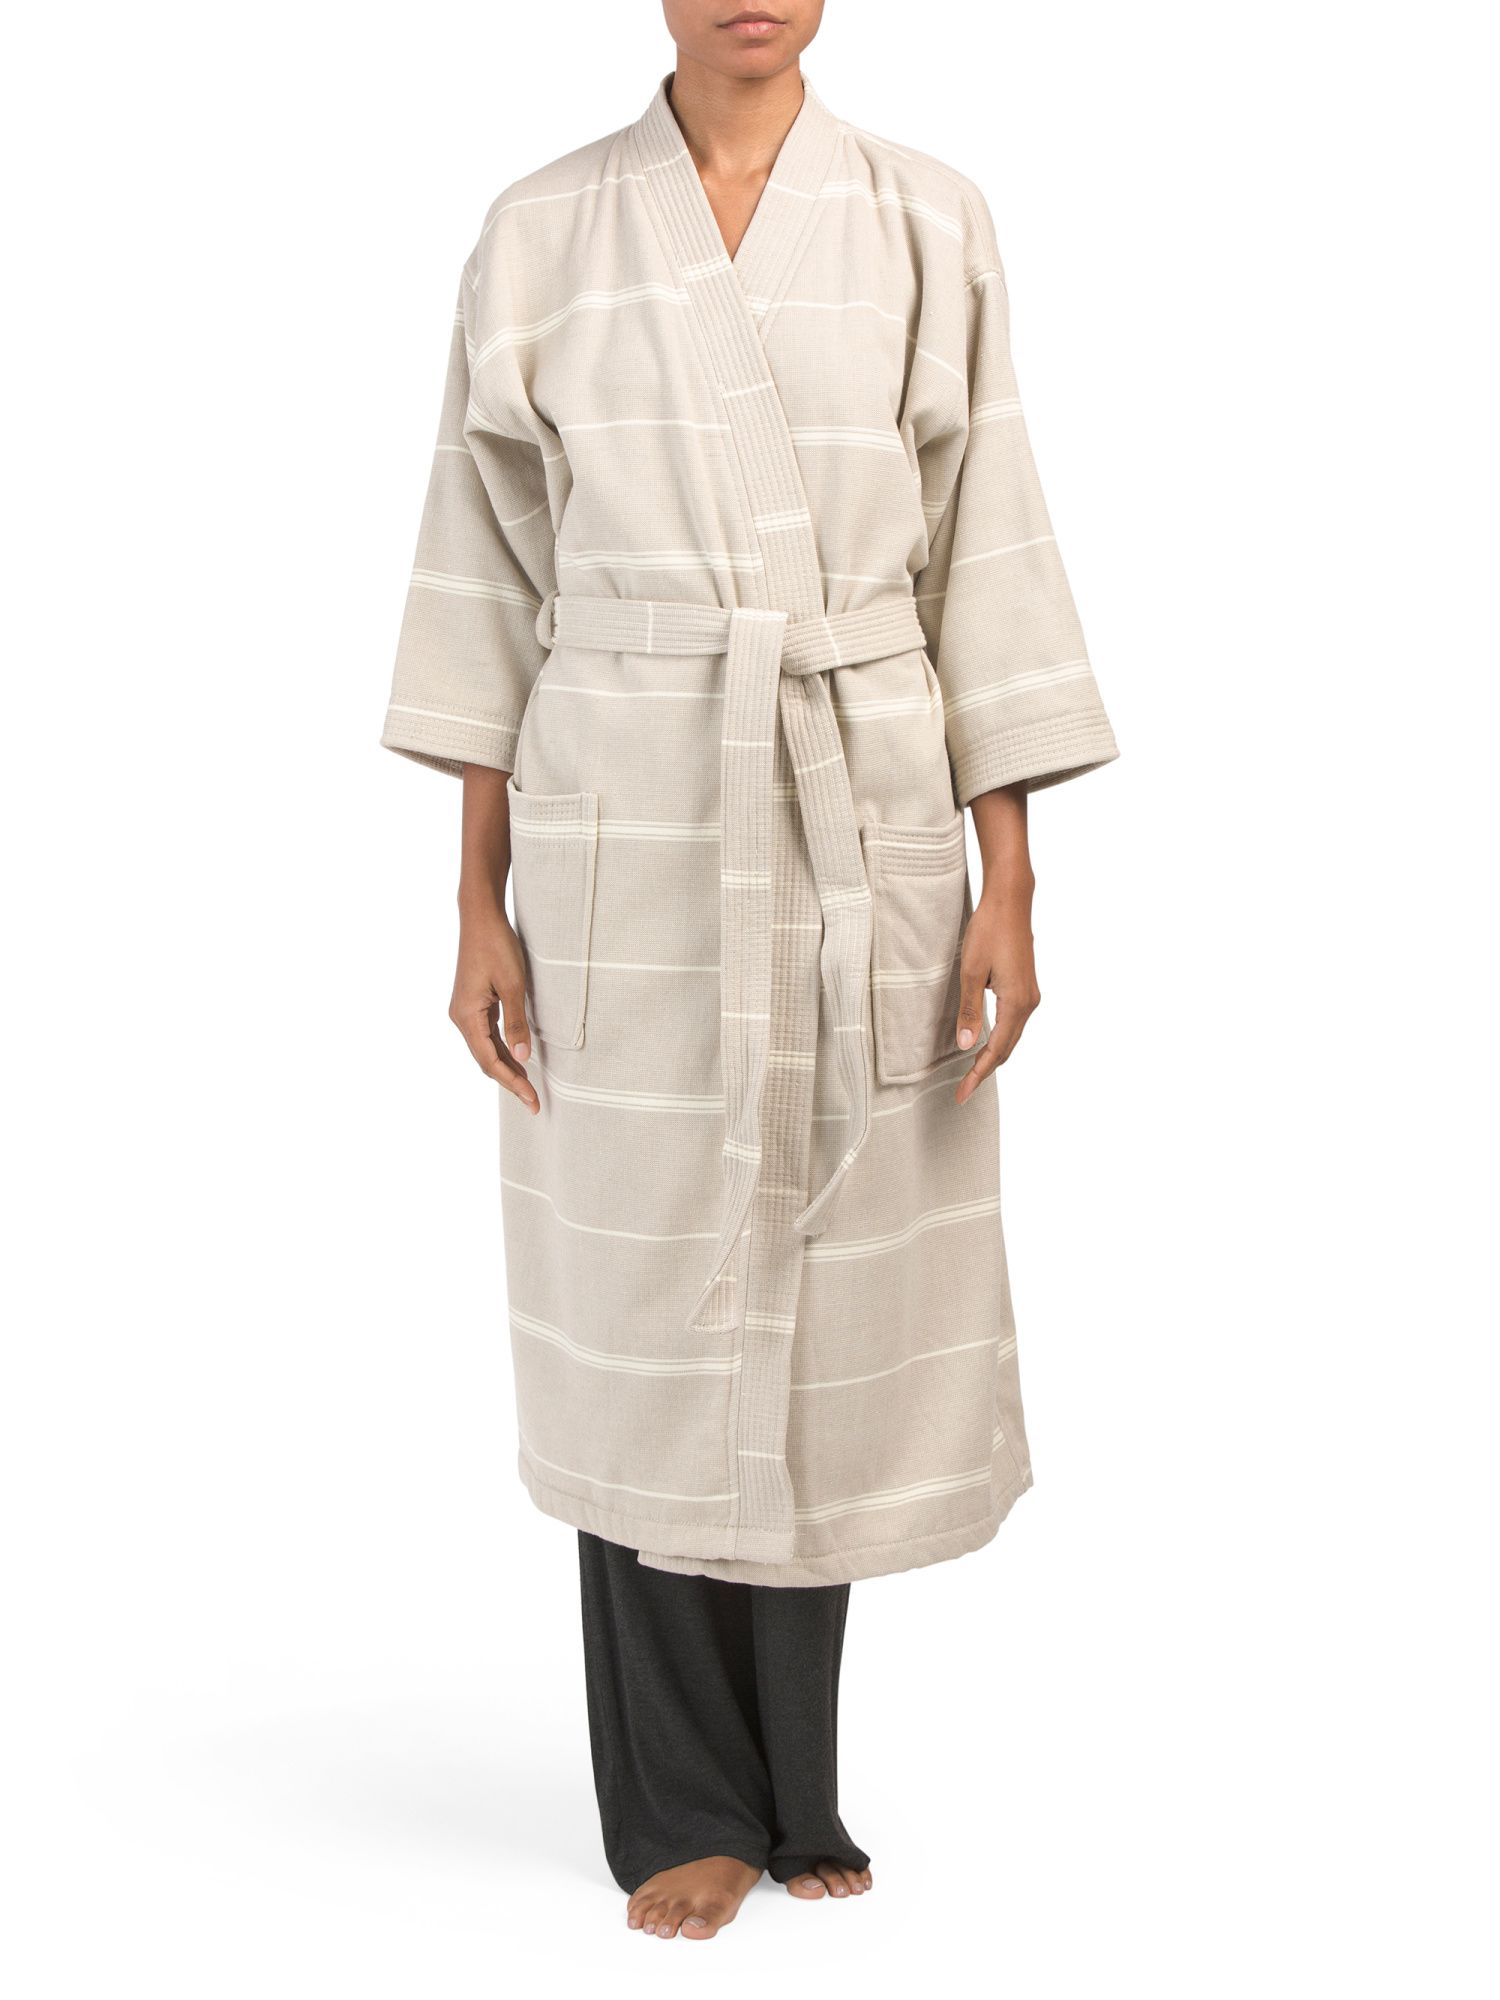 Peshterry Turkish Cotton Robe | TJ Maxx